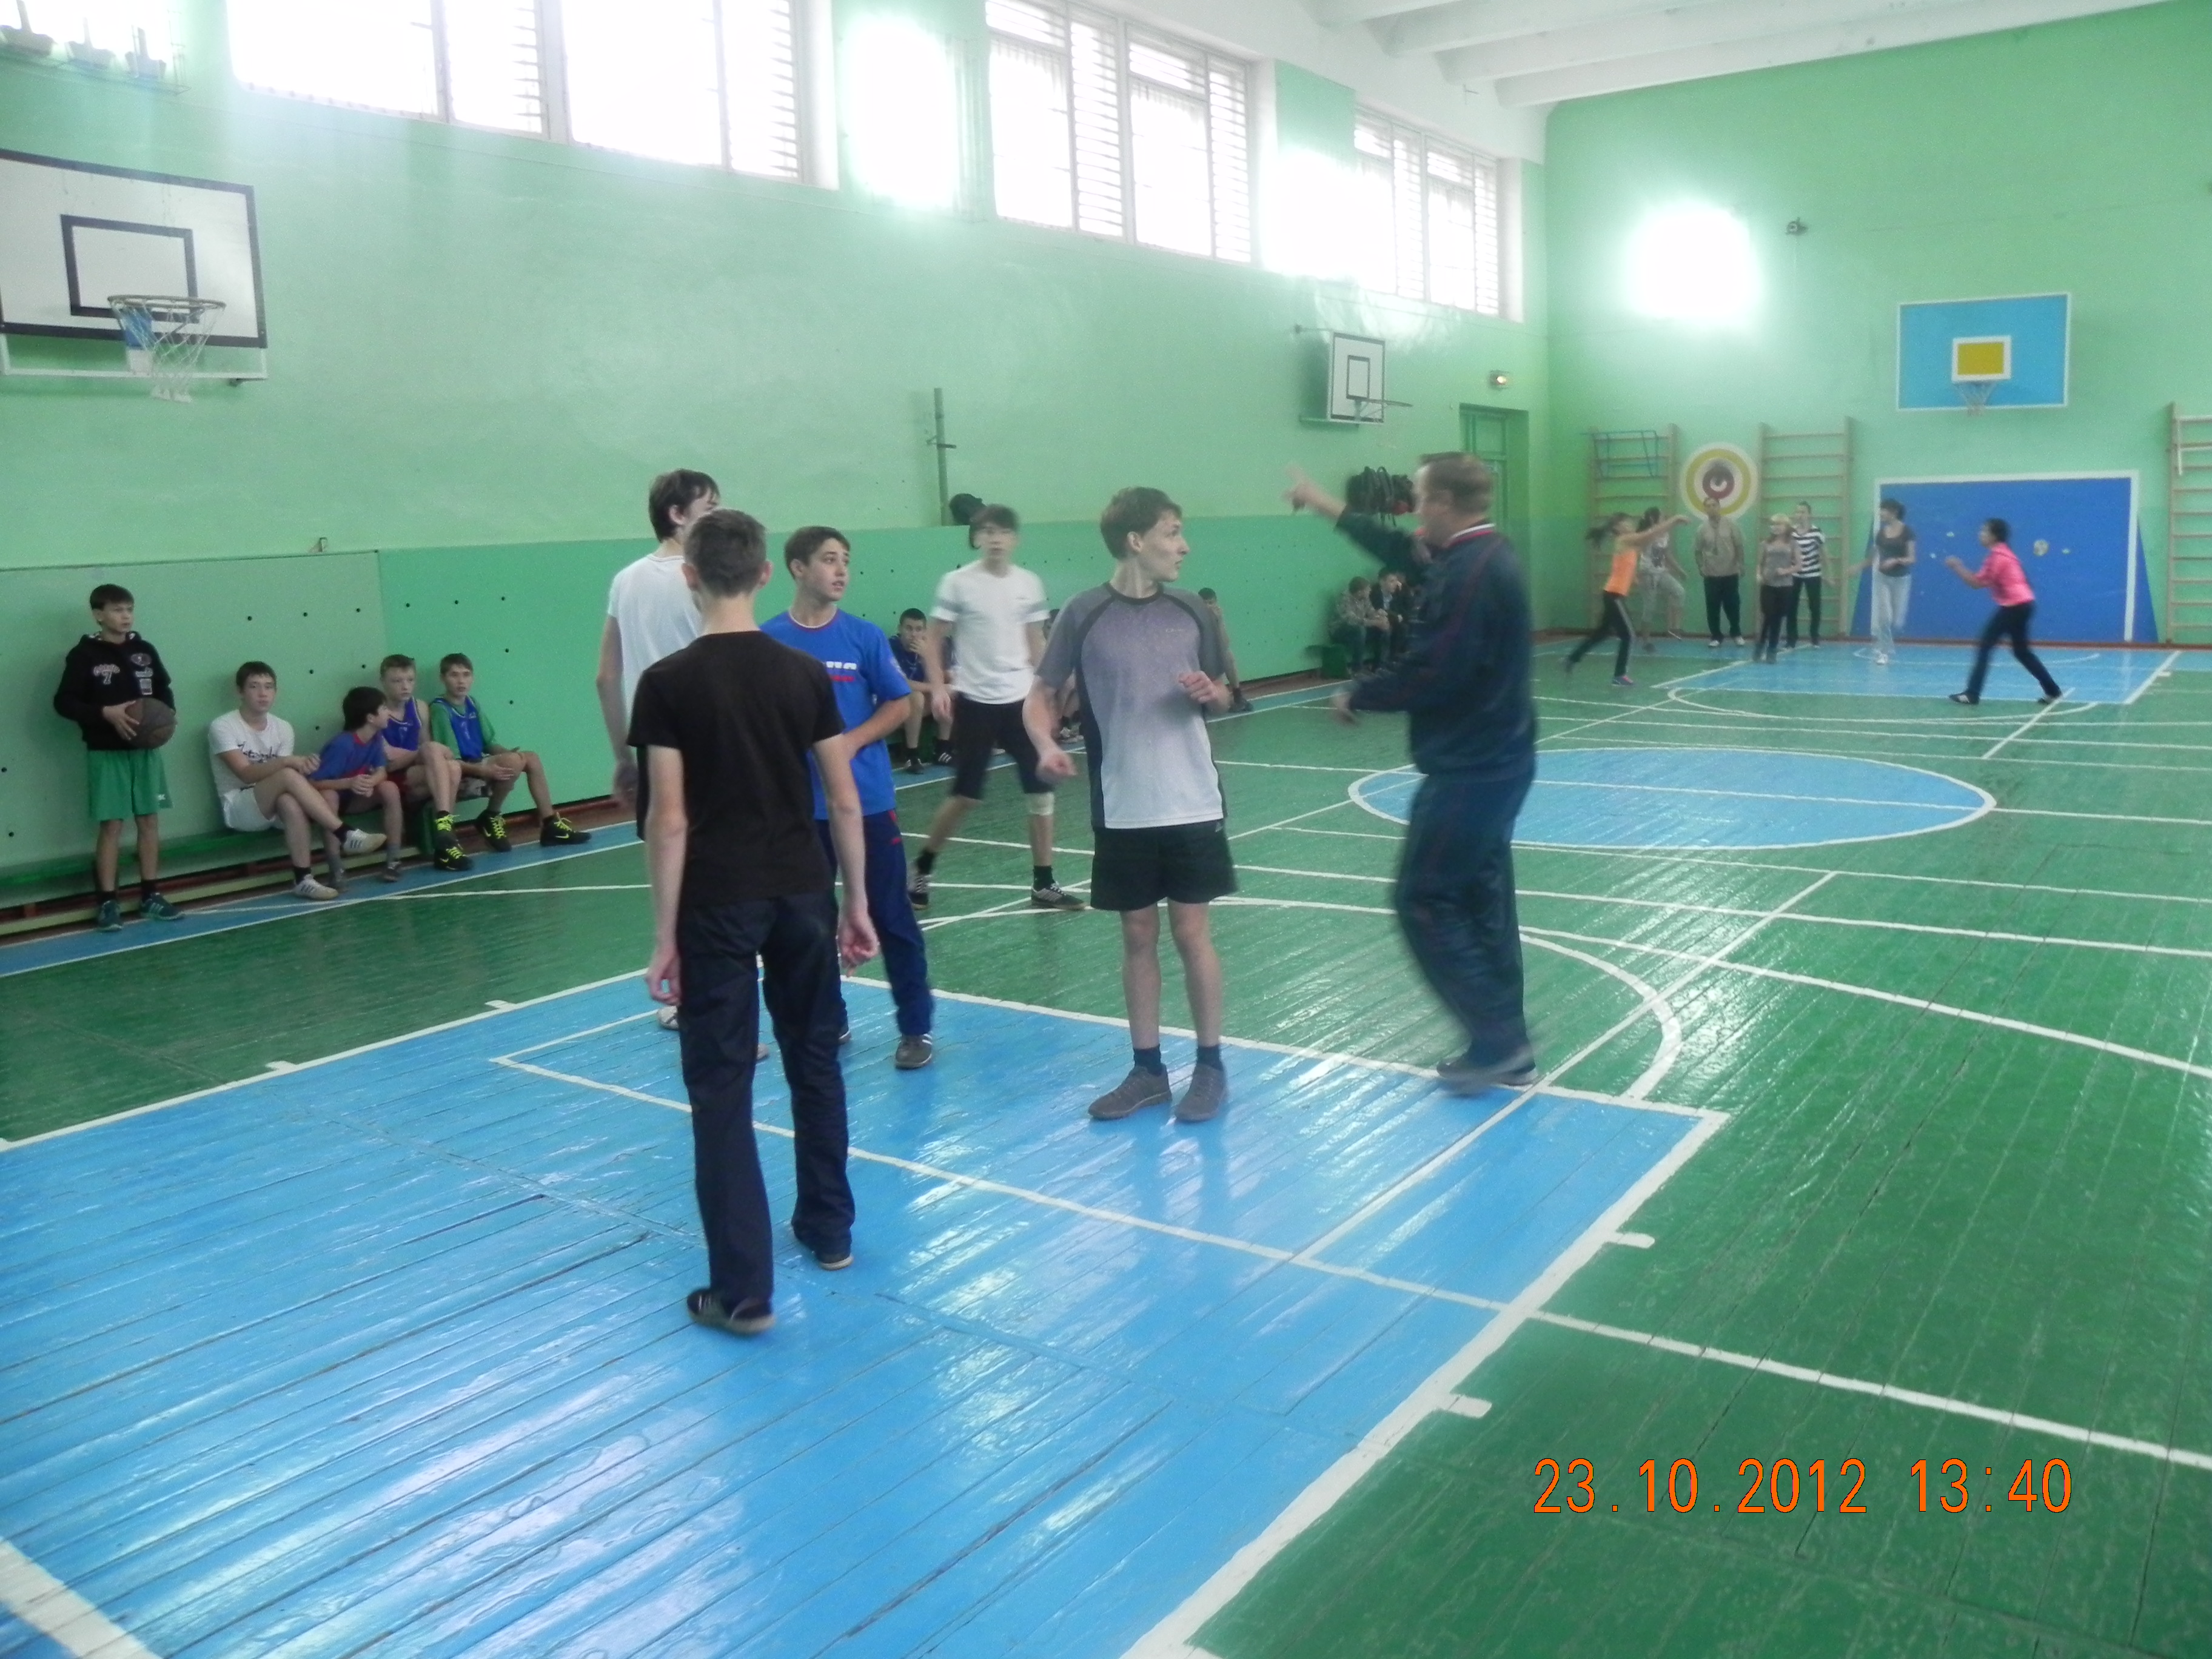 Спорт вместо наркотиков: в Калининском районе г. Чебоксары стартовало первенство по баскетболу среди школьных команд 